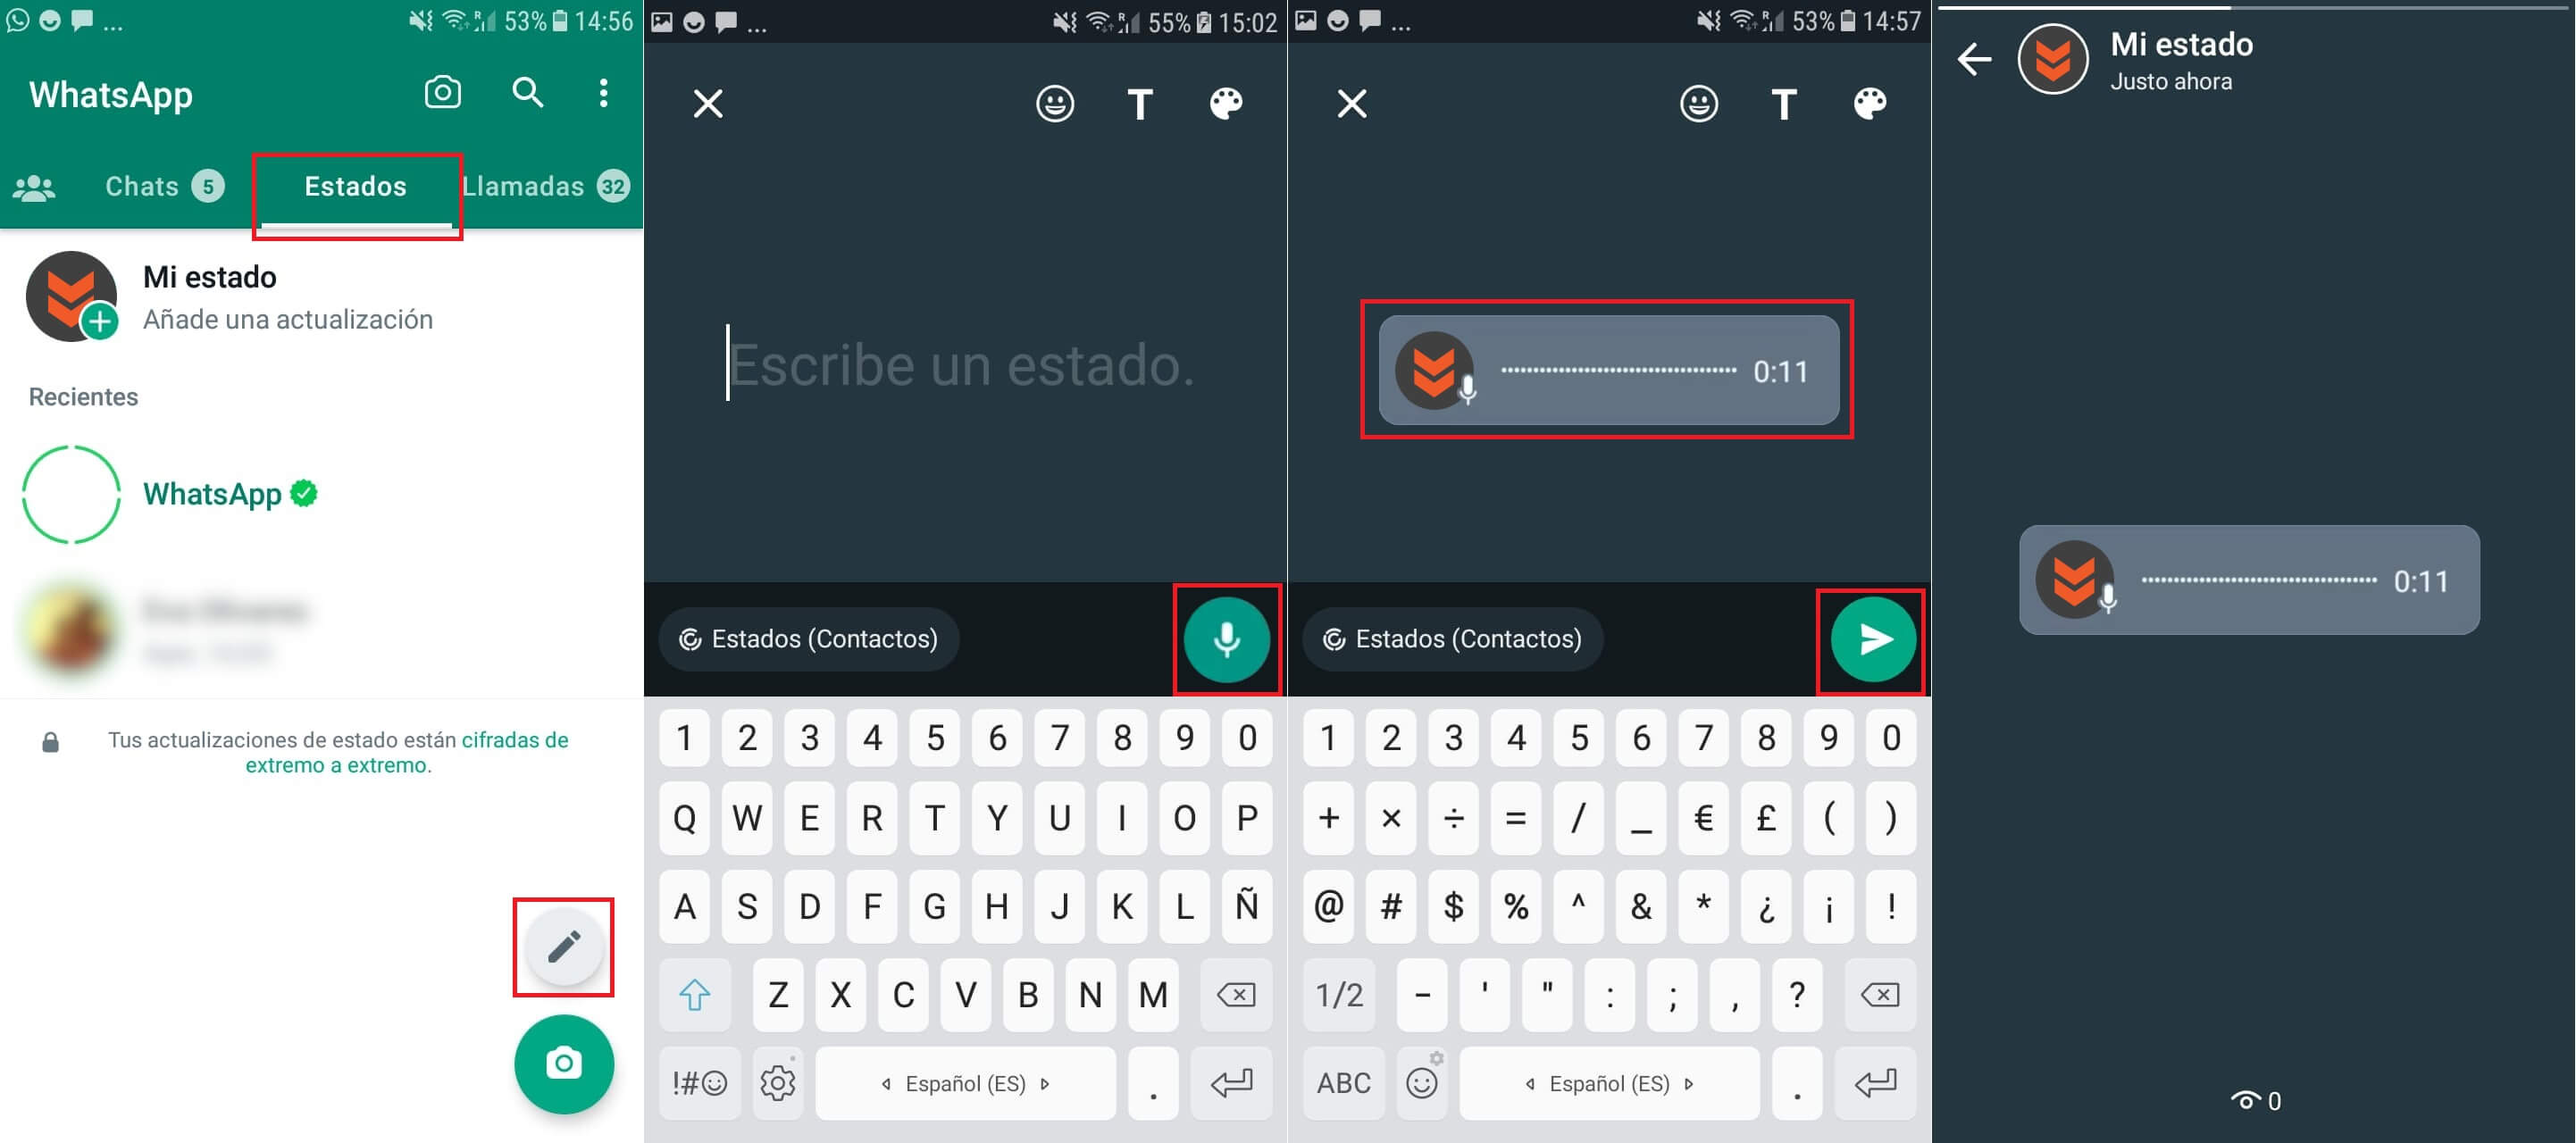 Whatsapp permite compartir notas de audio en tus estados Android e iPhone